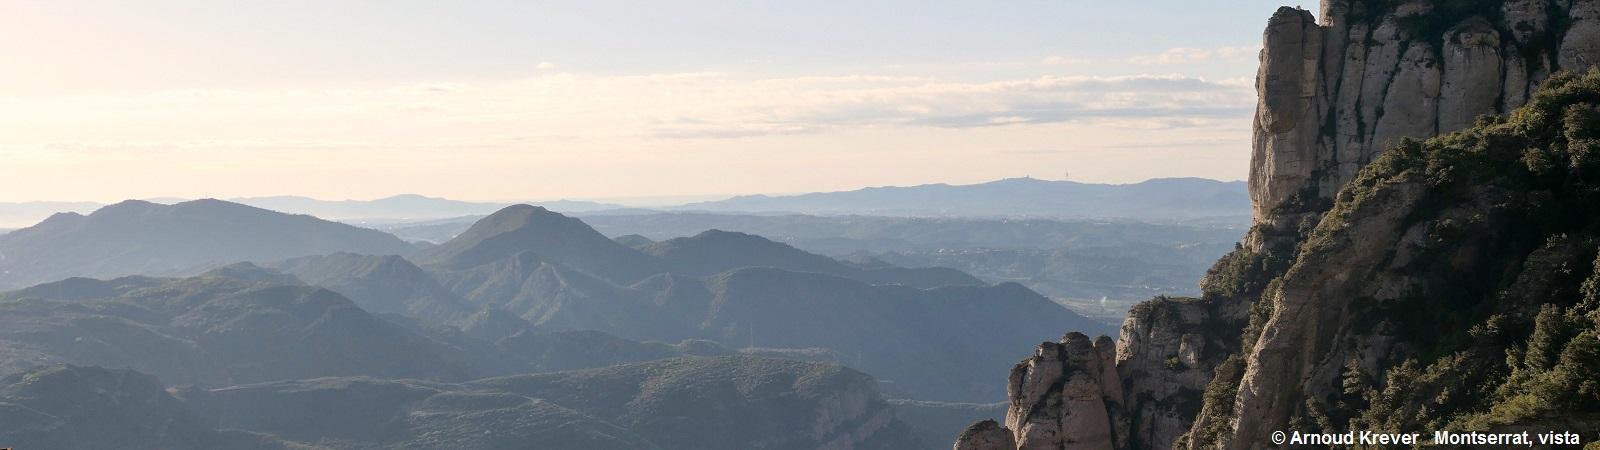 16. 18CAT (454) Uitzicht vanaf Montserrat